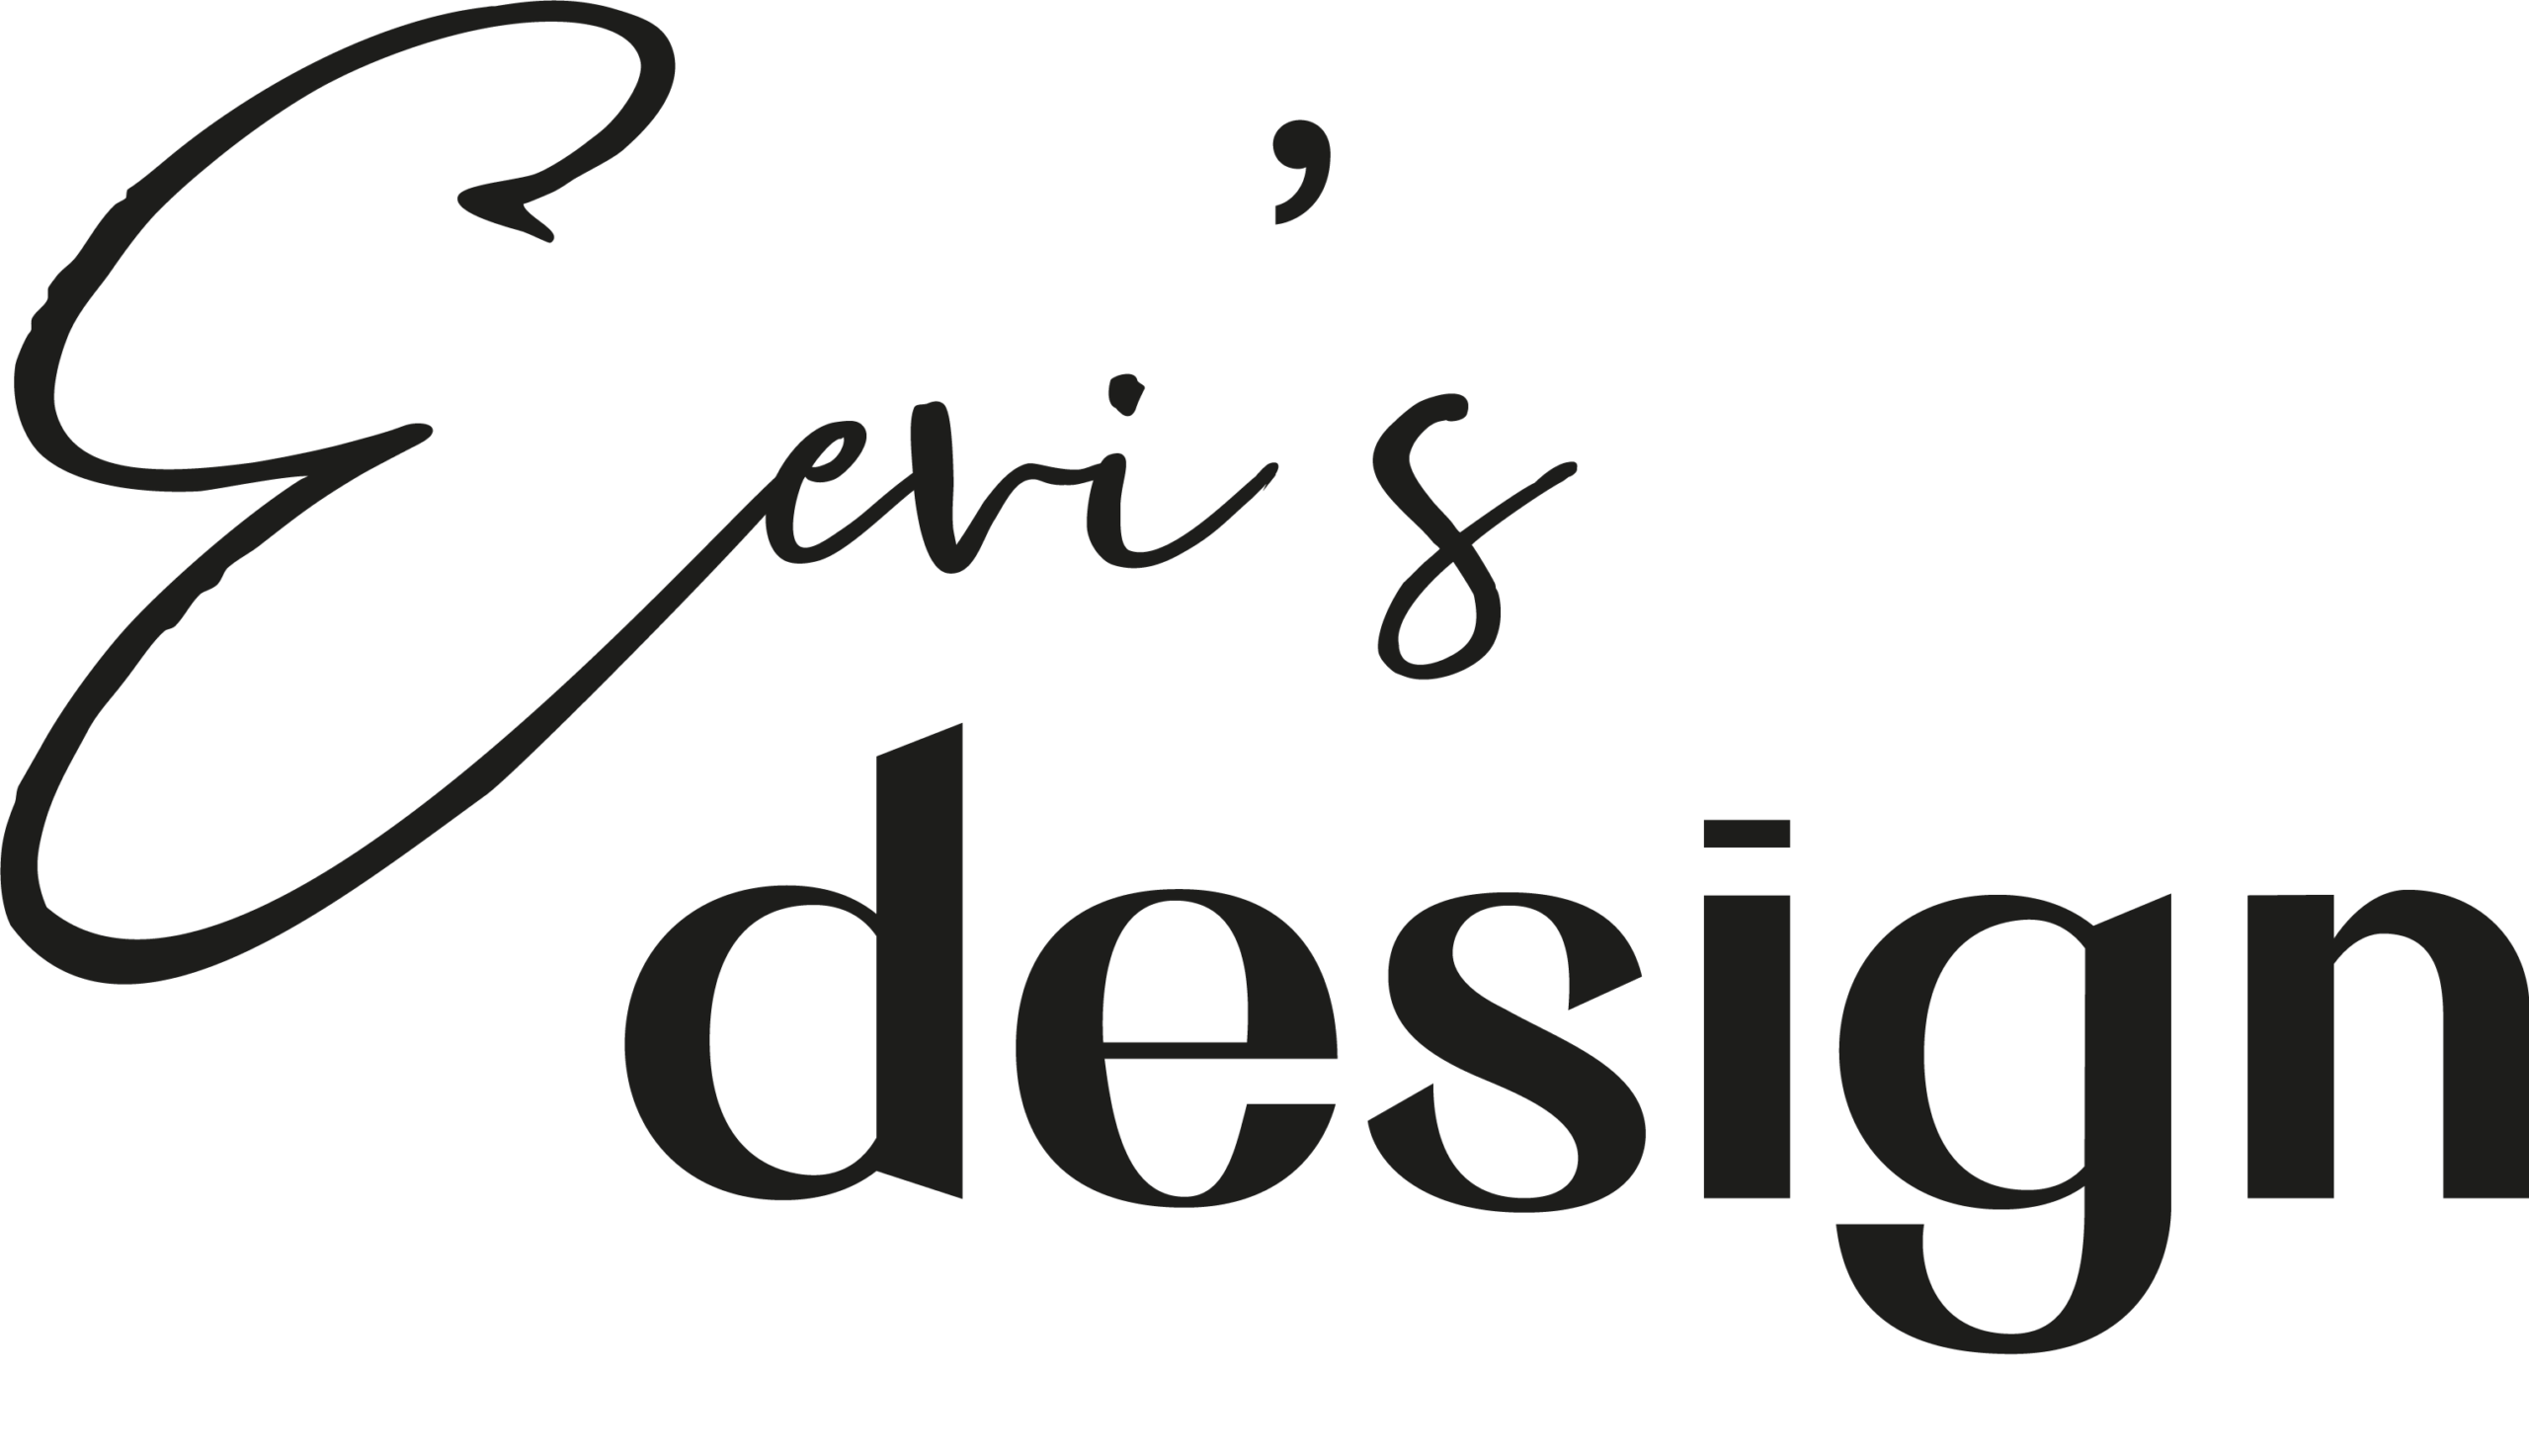 Eevi's Design